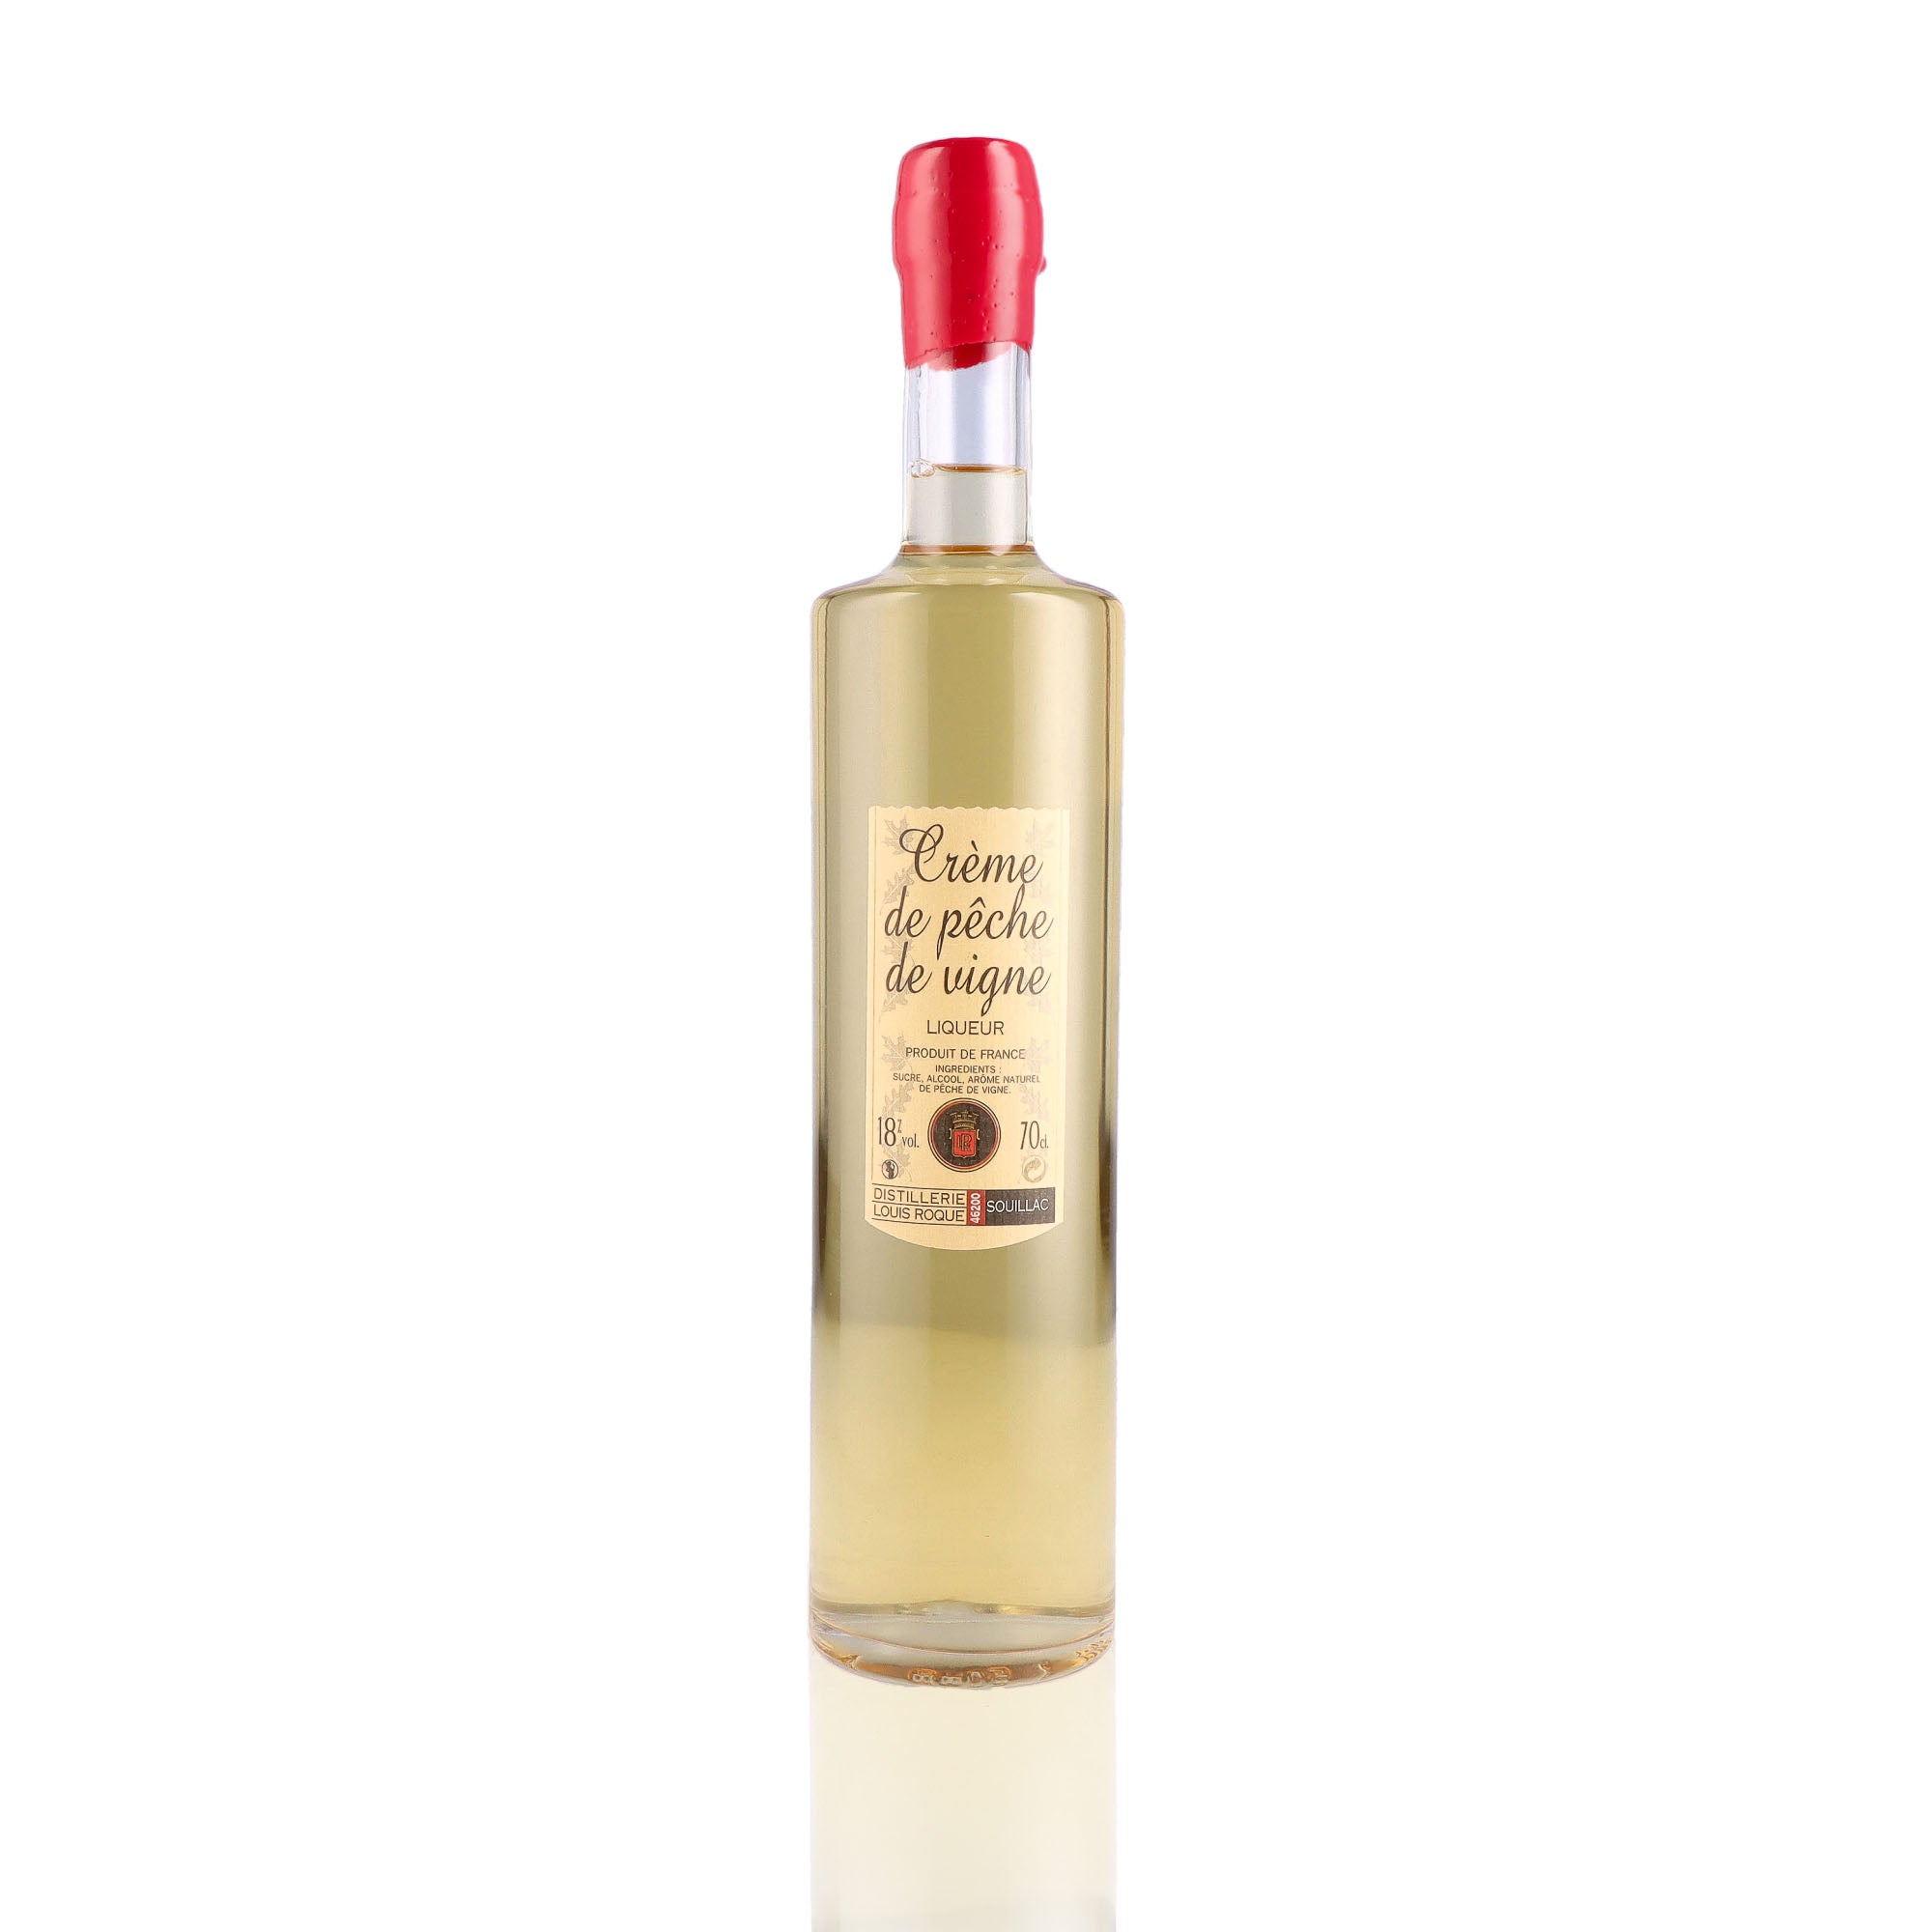 Une bouteille de Liqueur, de la marque Louis Roque, nommée Crème de Myrtille.